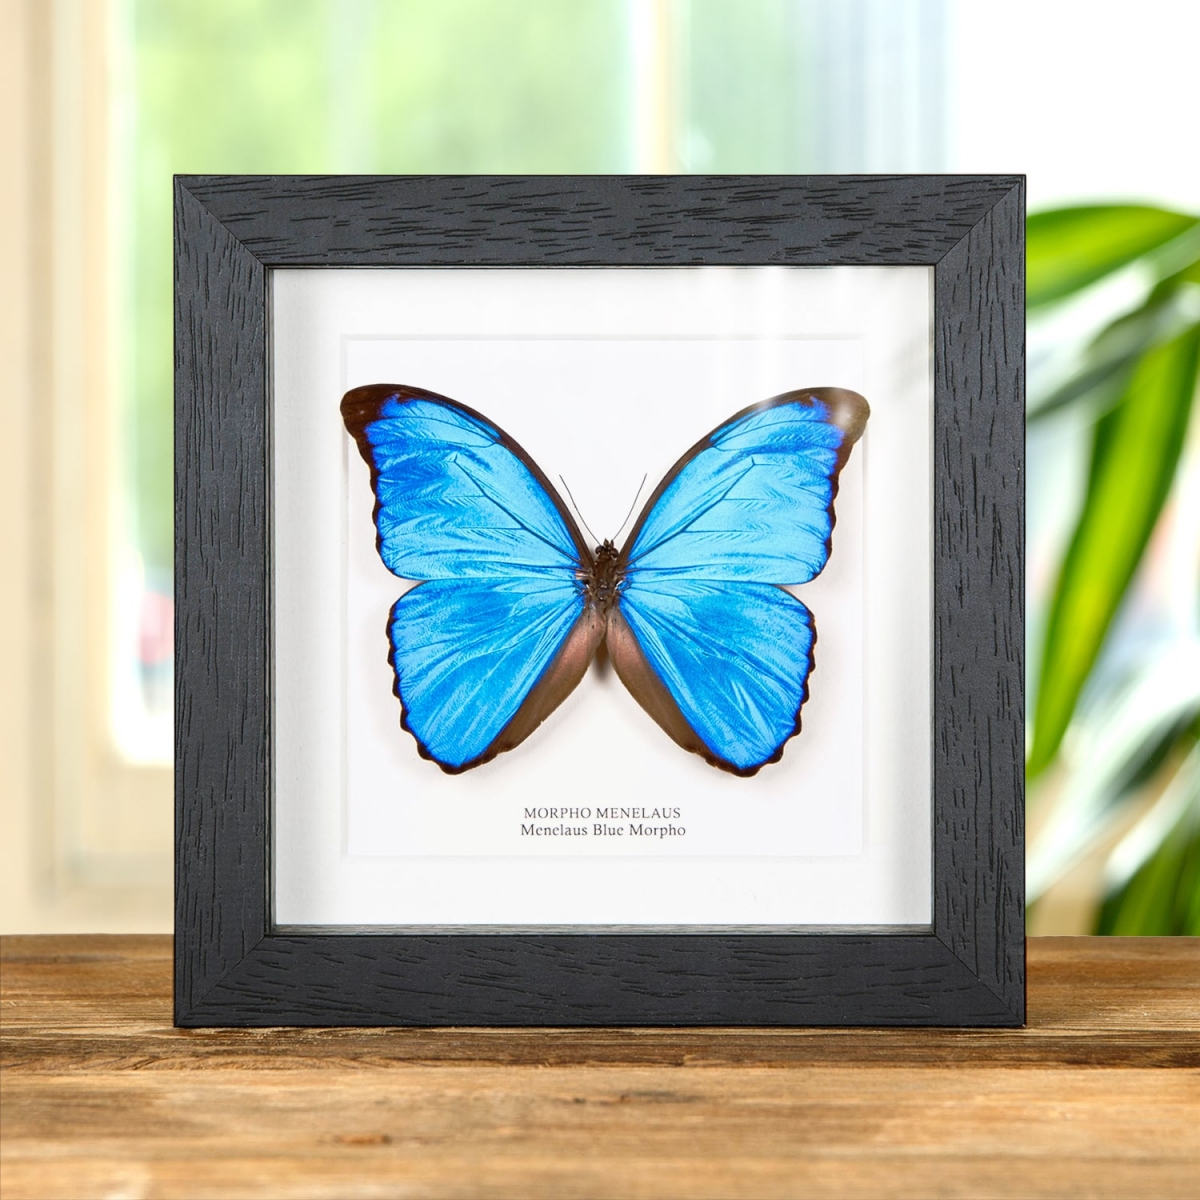 Minibeast Menelaus Blue Morpho Butterfly in Box Frame (Morpho menelaus)